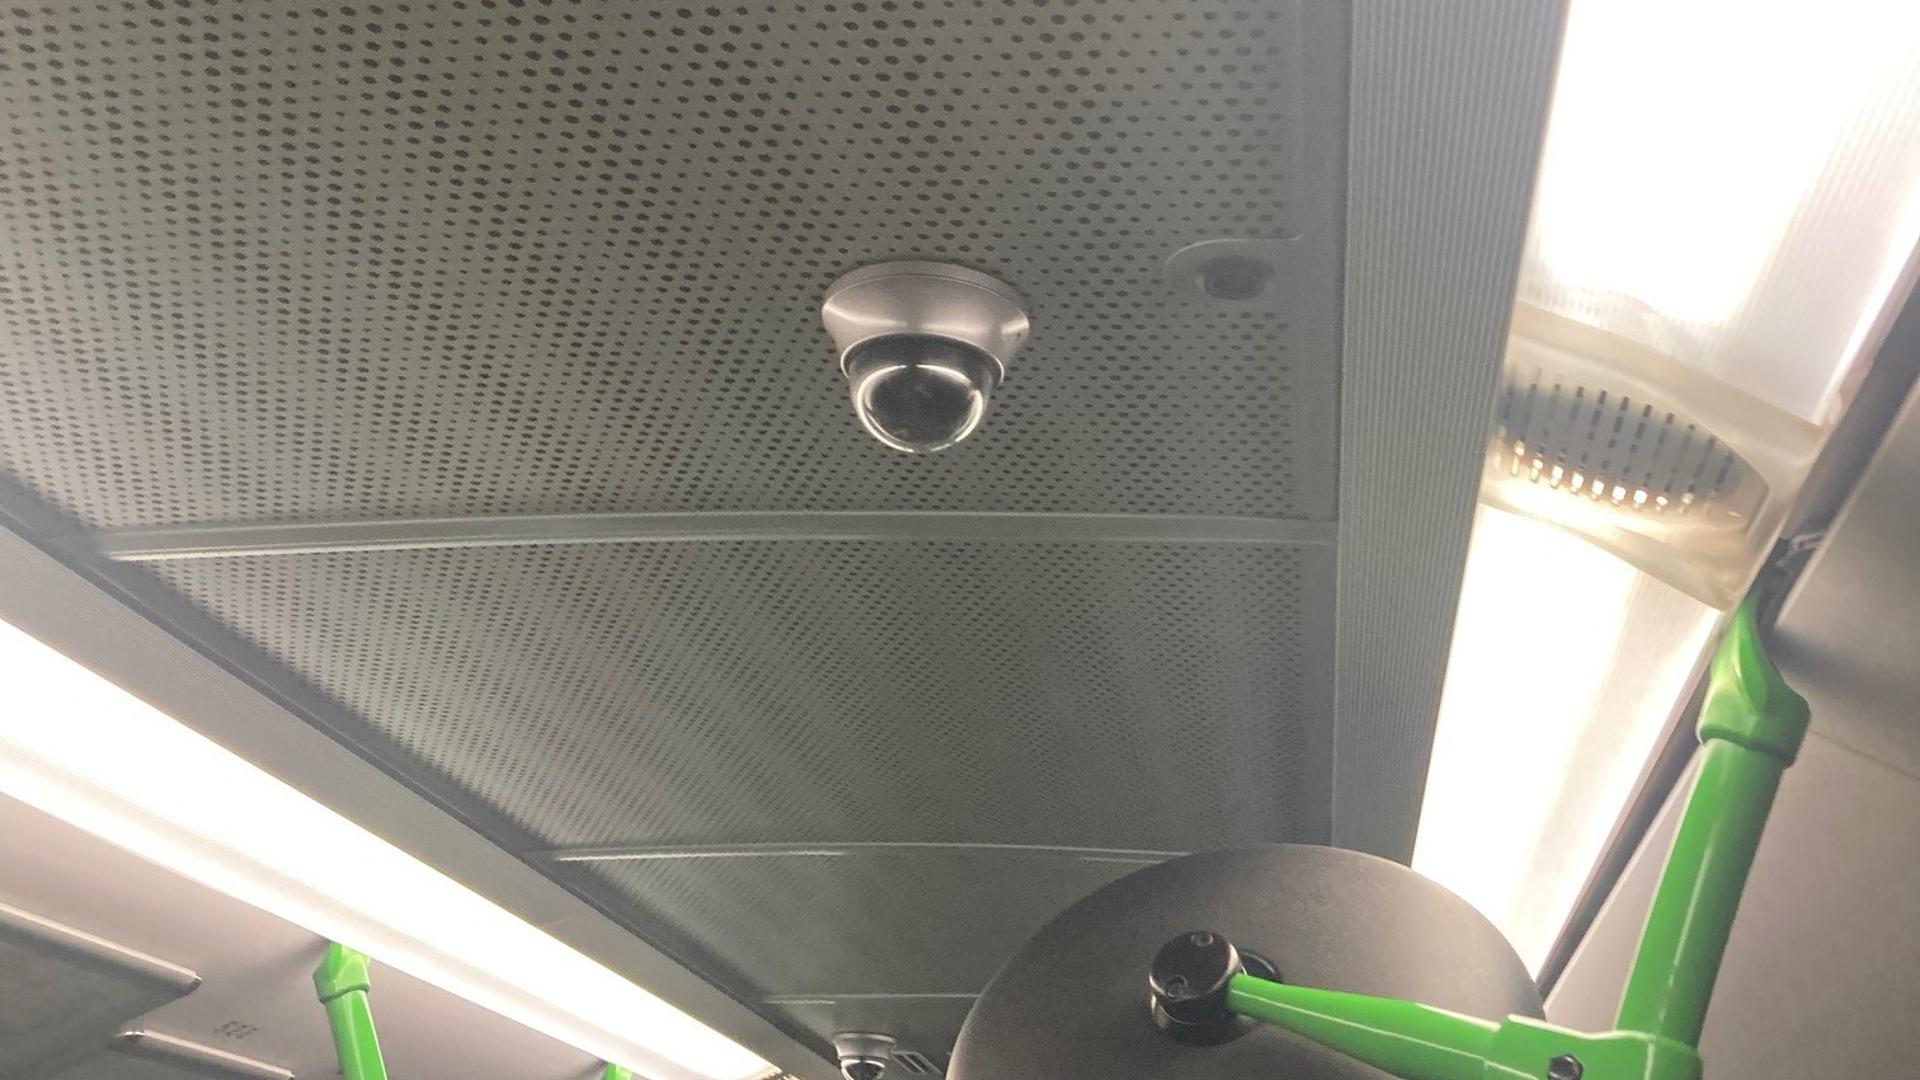 Erhöhte Sicherheit: In vielen Bussen und Bahnen des öffentlichen Nahverkehrs sind Kameras installiert. Die Stadtwerke Baden-Baden haben die Technik eingeführt, um Straftaten zu verhindern und besser aufklären zu können.